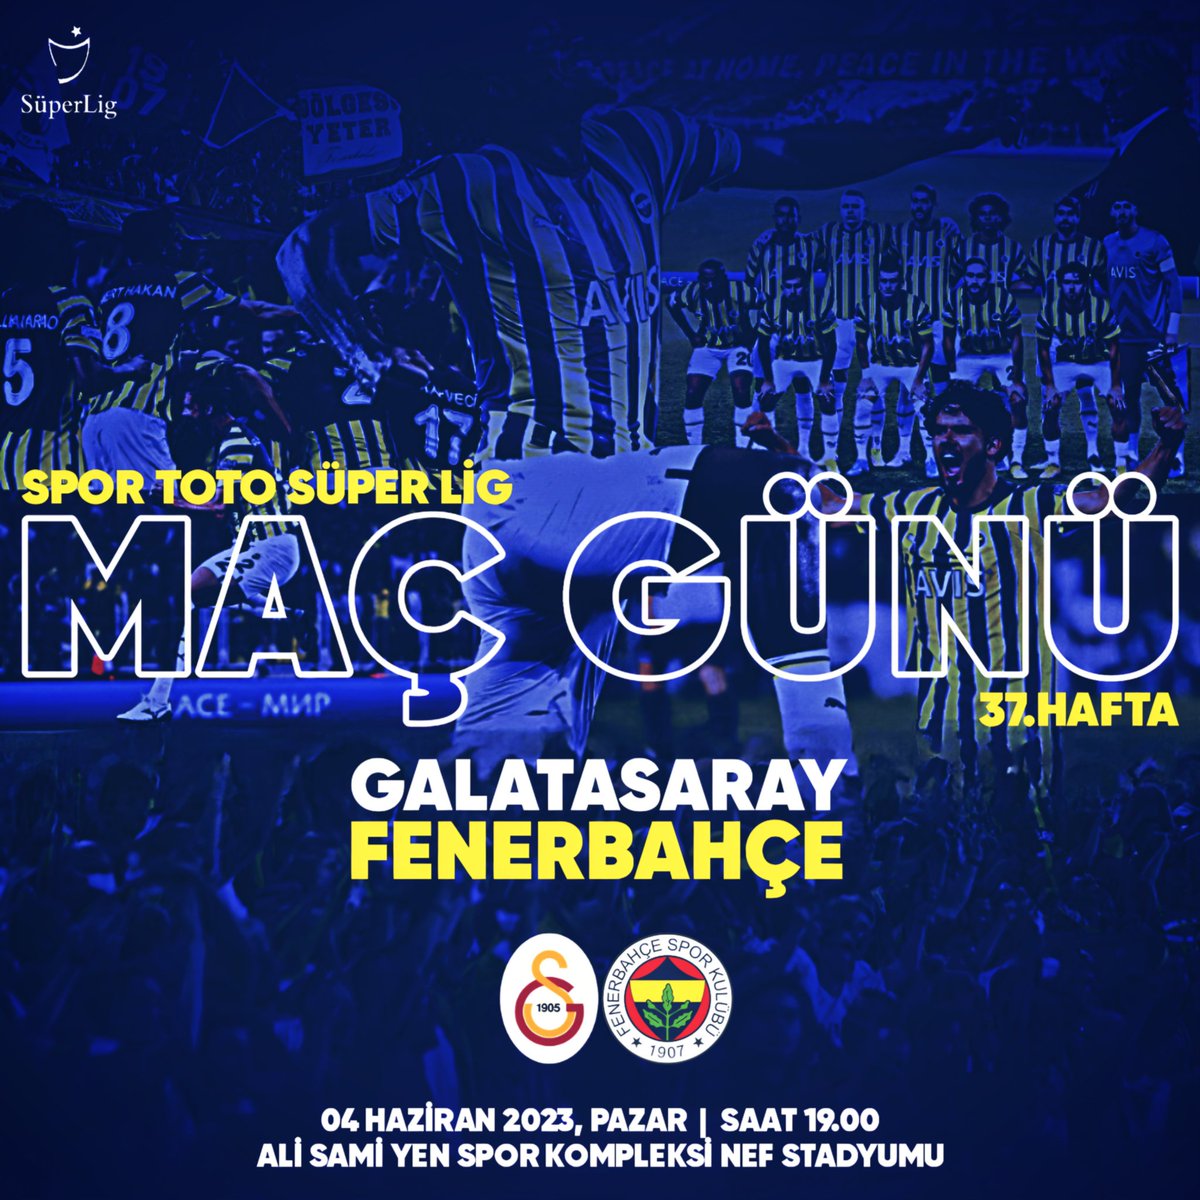 🏆 Spor Toto Süper Lig 37.Hafta
🆚 Galatsaray
📅 04.06.2023 Pazar
⏰ 19.00
🏟 Nef Stadyumu
📺 BeinSports1 #FenerinMaçıVar #GSVFB